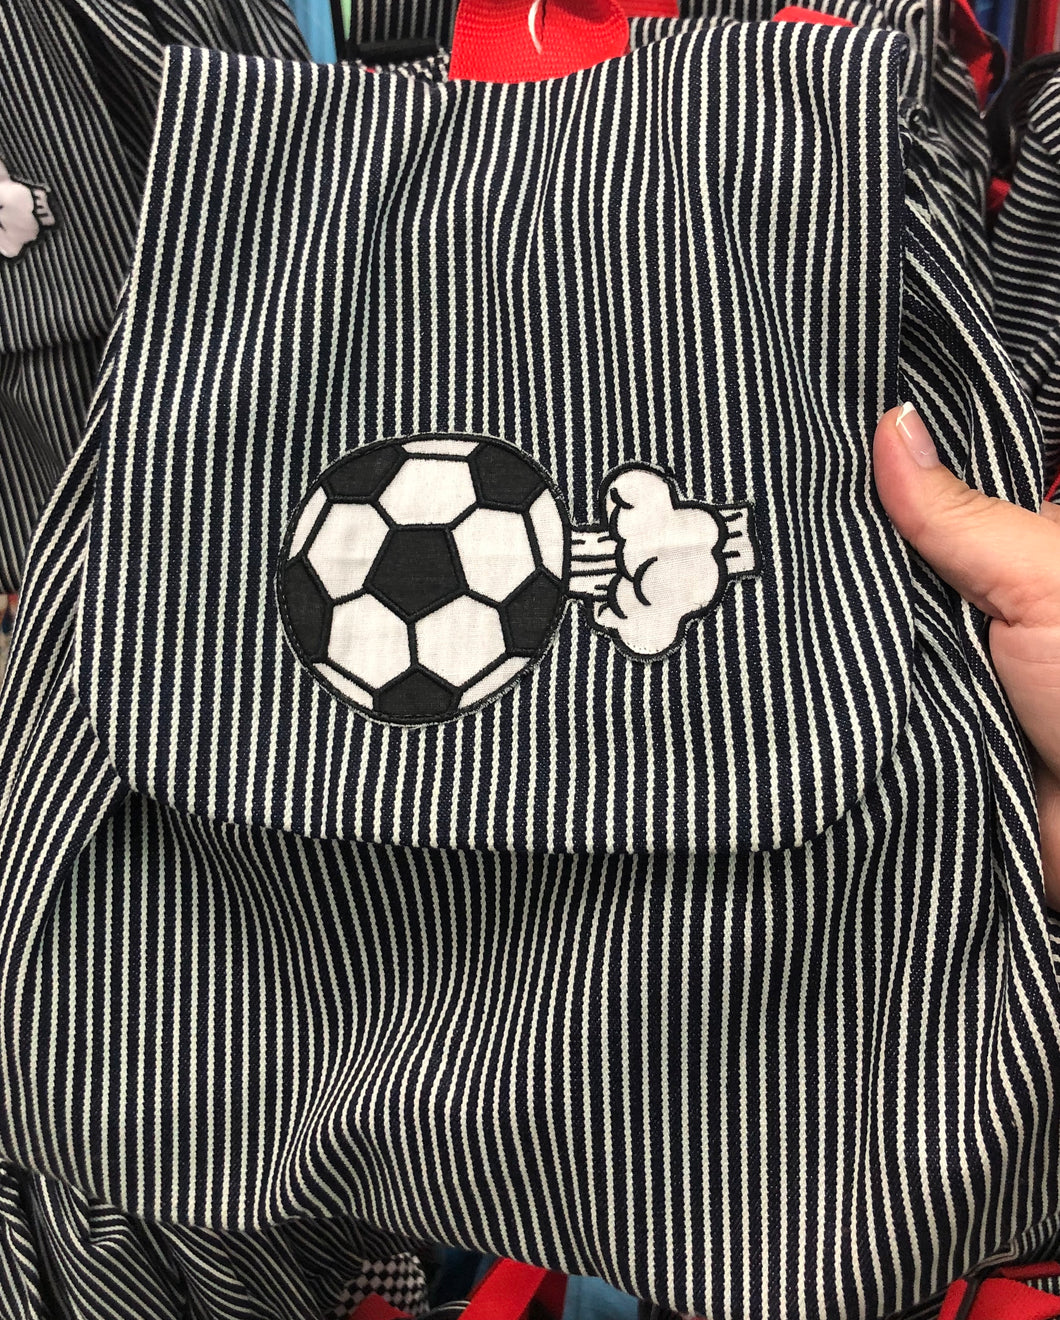 KIDS CORNER soccer ball backpack